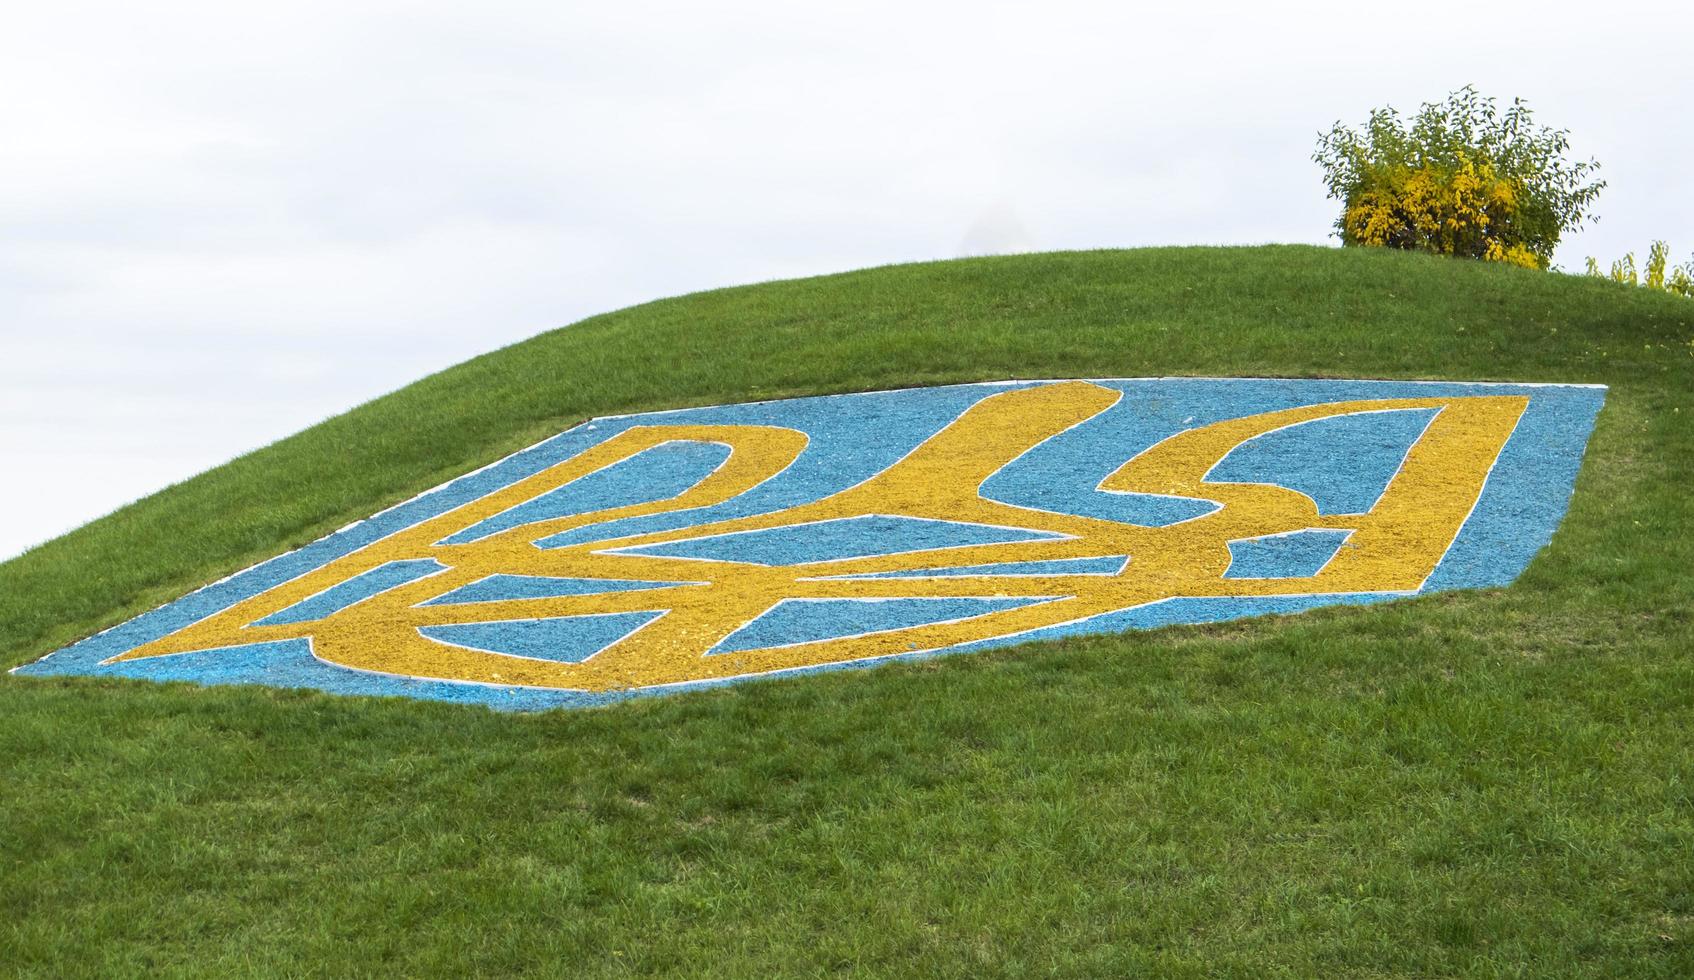 el gran escudo de armas de ucrania sobre un césped verde bordeado de piedras azules y amarillas contra un cielo azul. el símbolo oficial del estado. tridente del principe vladimir. ucrania, Kyiv - 08 de octubre de 2022. foto